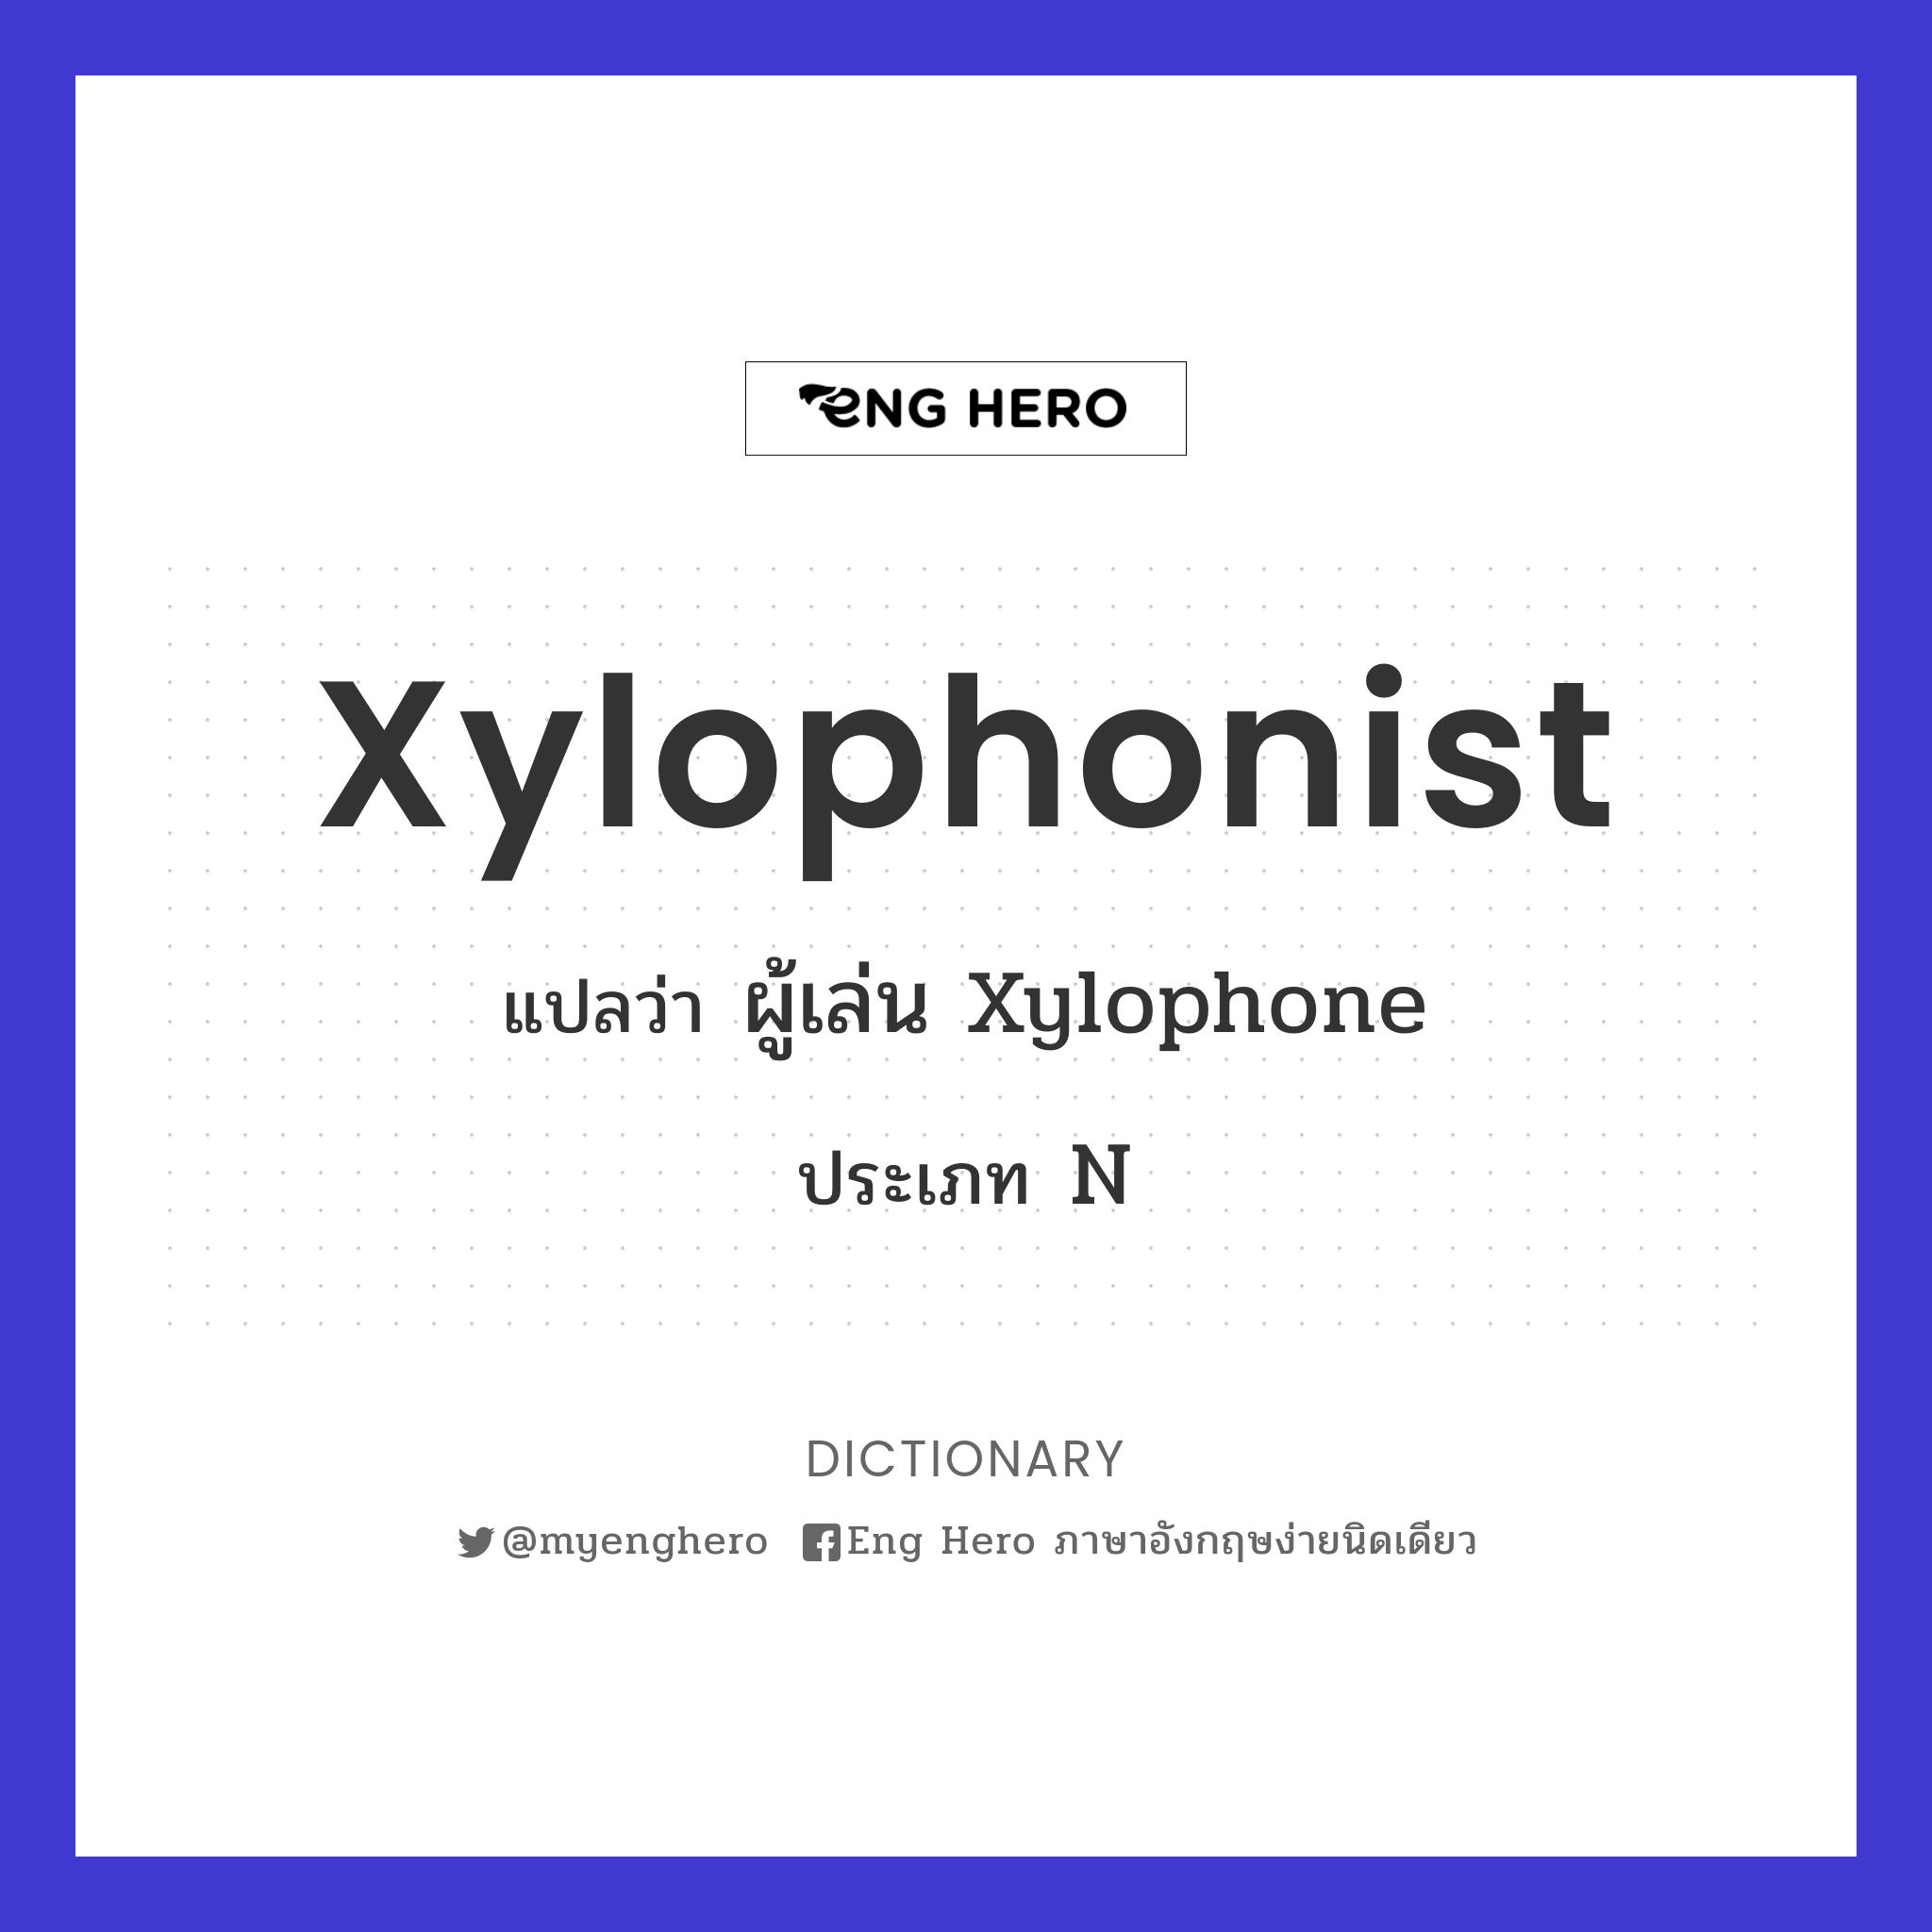 xylophonist